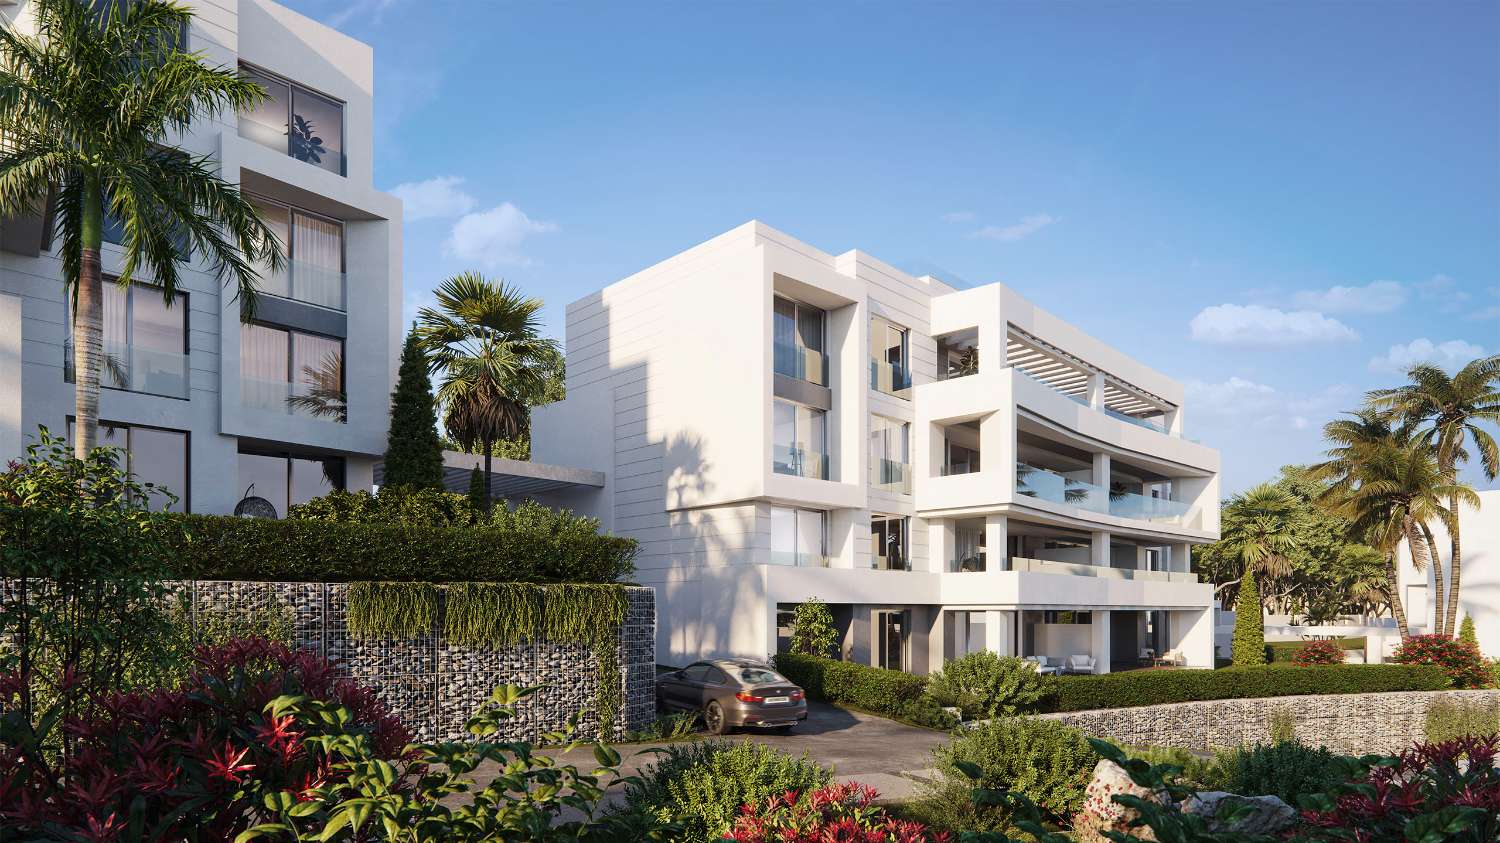 Spazioso appartamento con giardino privato in lussuosa urbanizzazione nel resort di Marbella, sulla prima linea del campo da golf